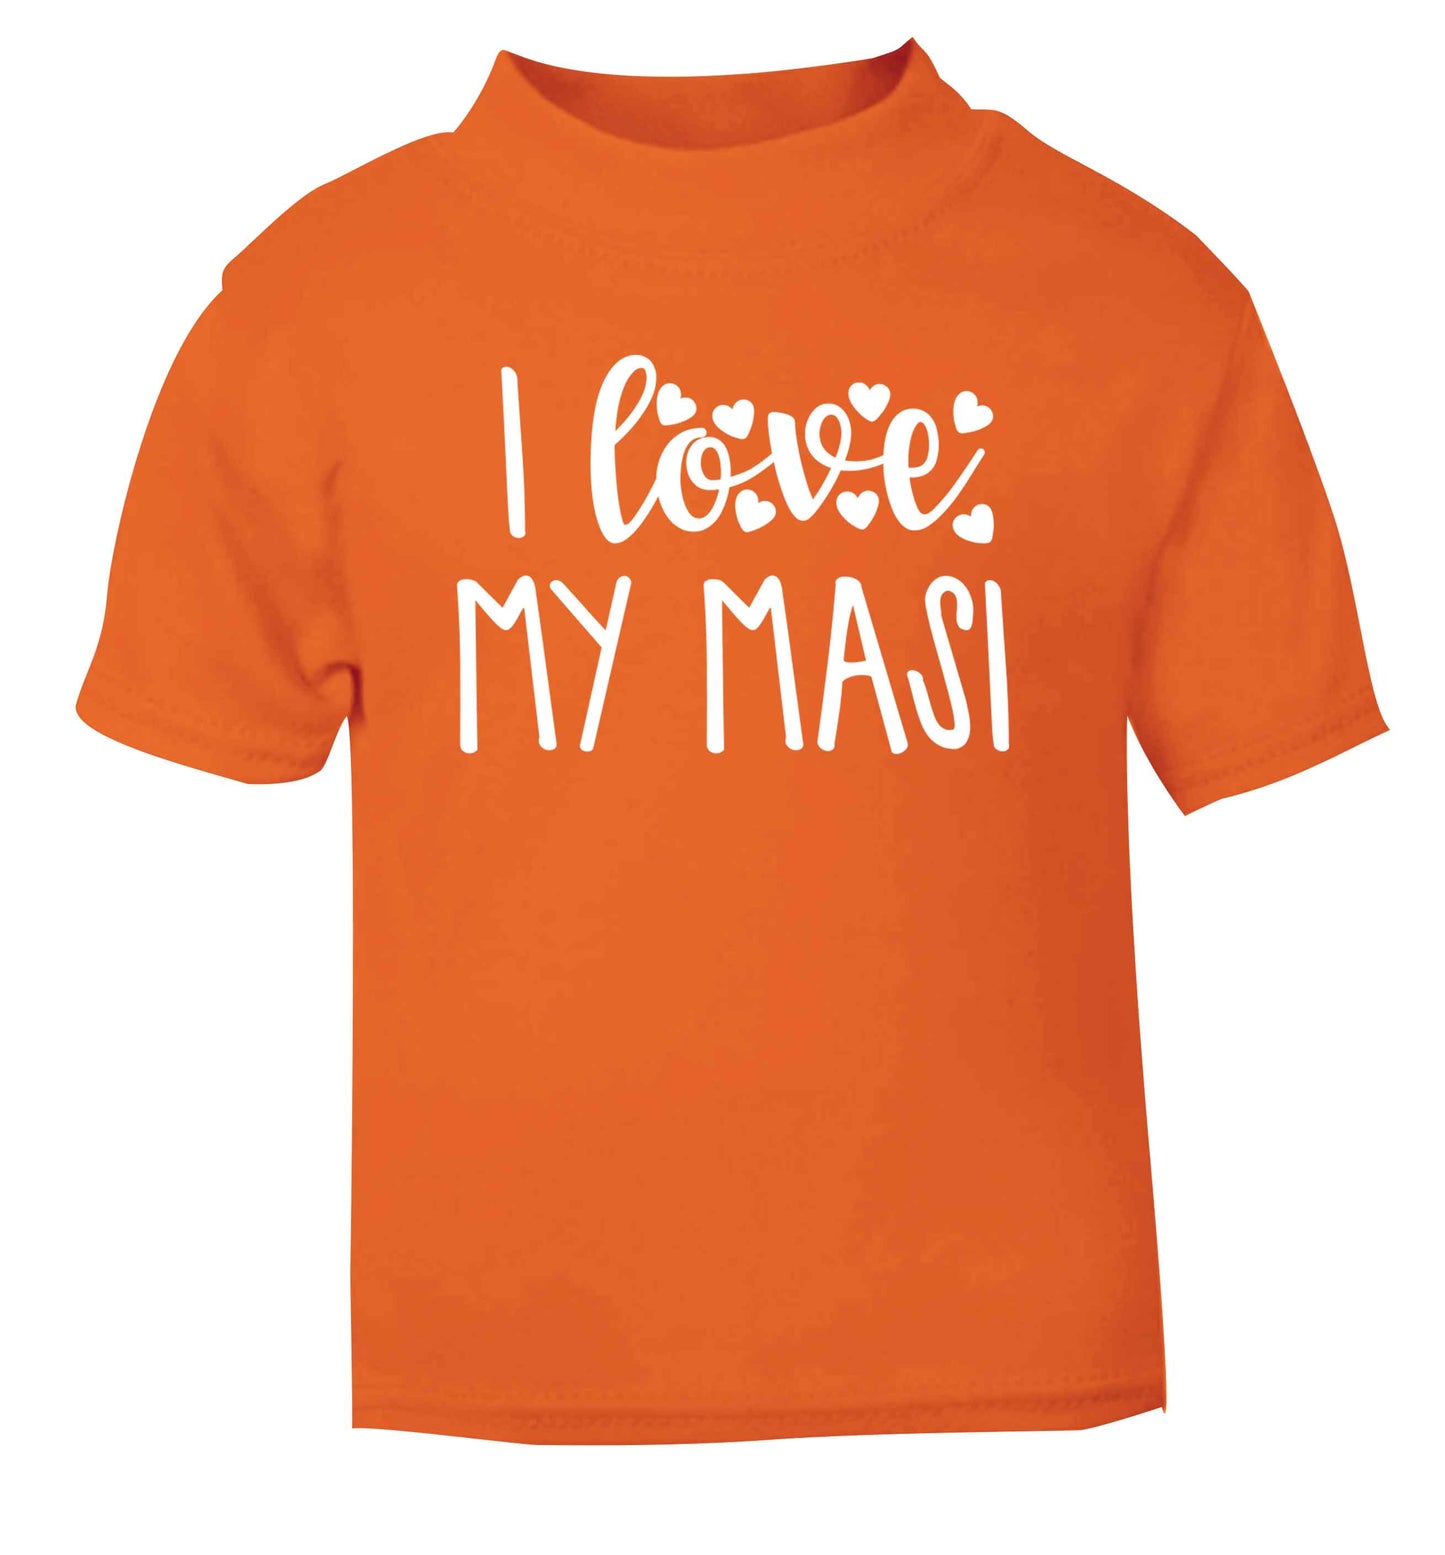 I love my masi orange Baby Toddler Tshirt 2 Years